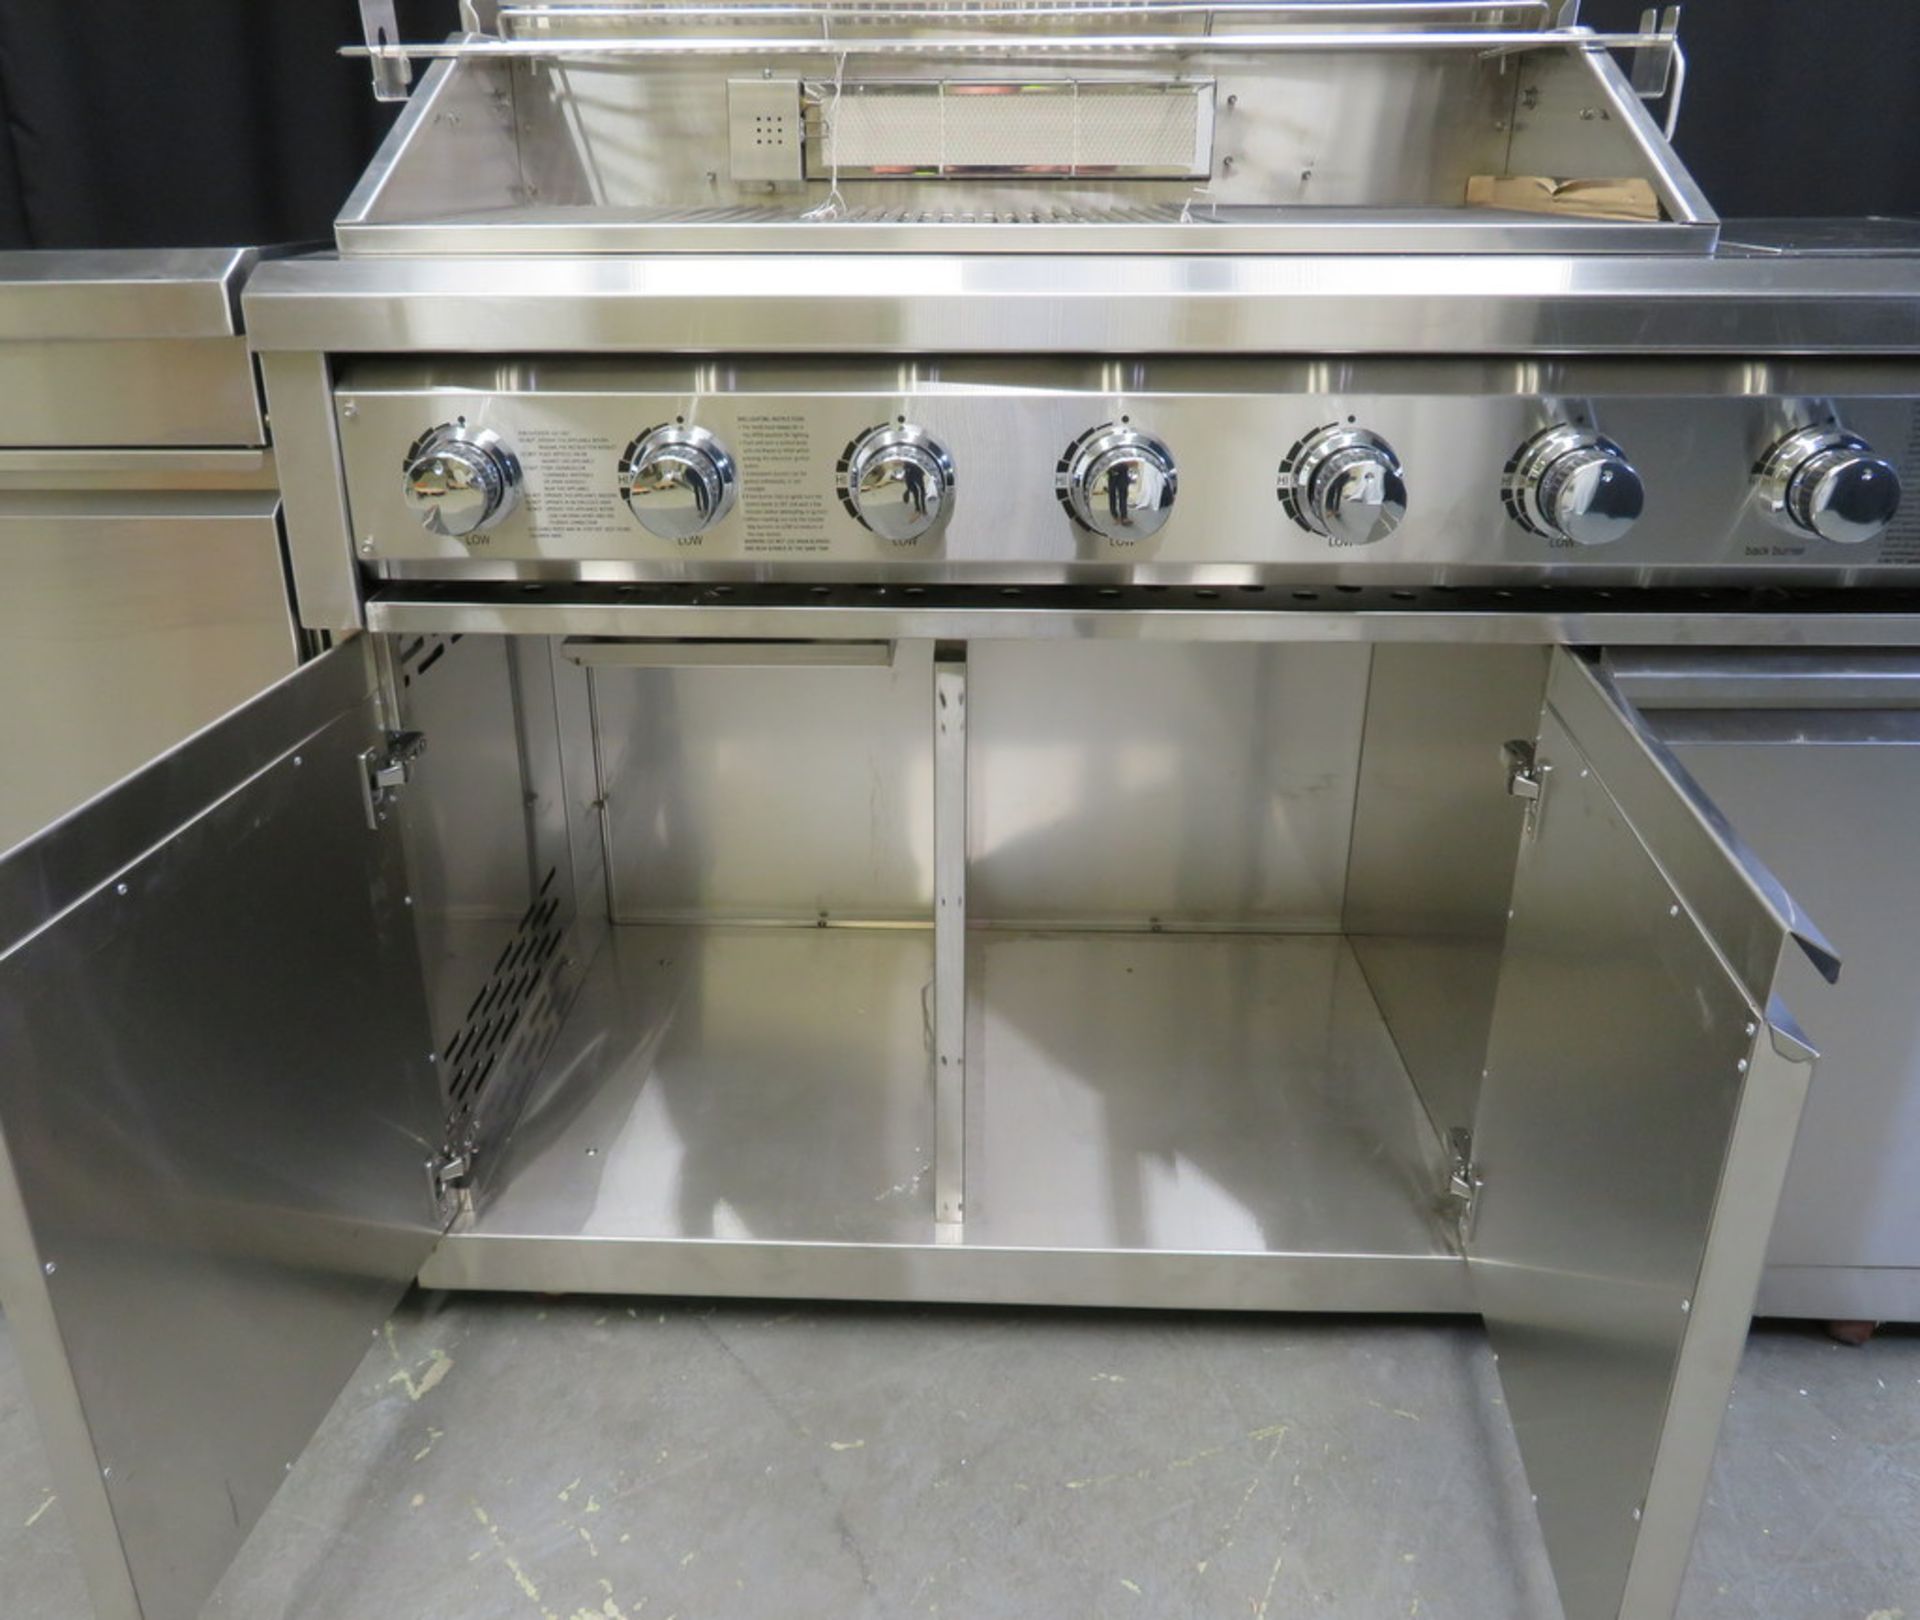 Gas 6 burner BBQ with infrared rear burner & side burner, including sink, prep table & refrigerator - Image 13 of 28